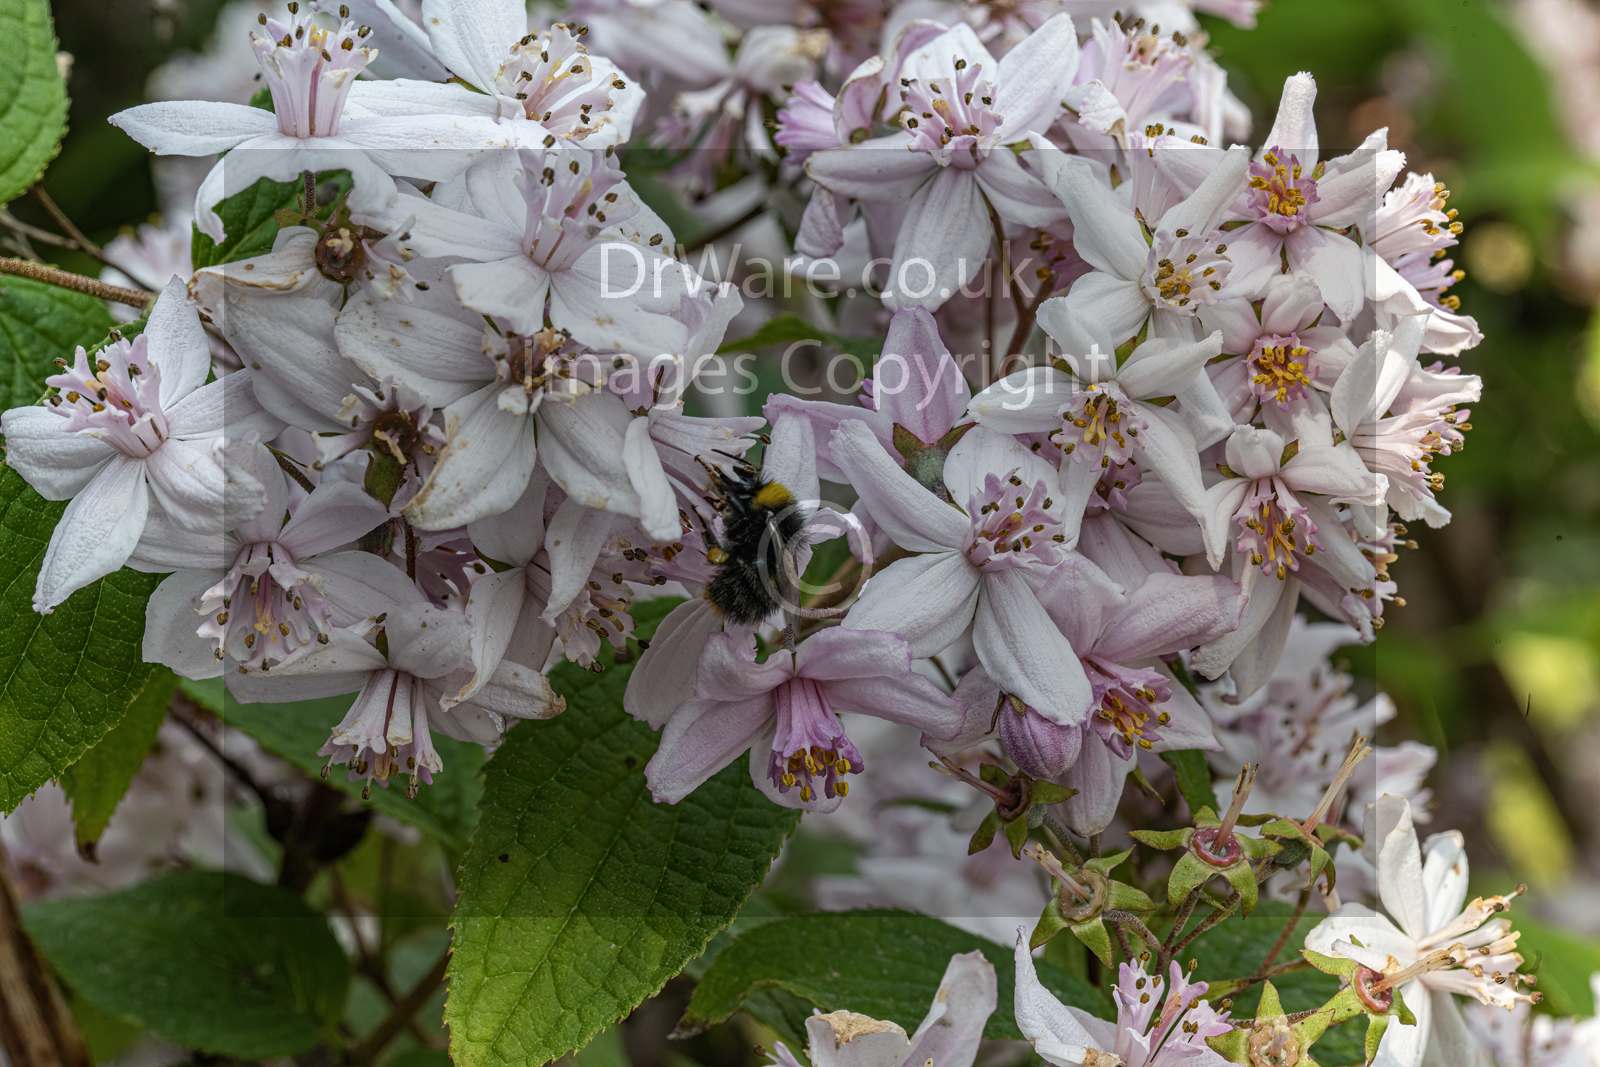 Bee on Flower in garden Greenock